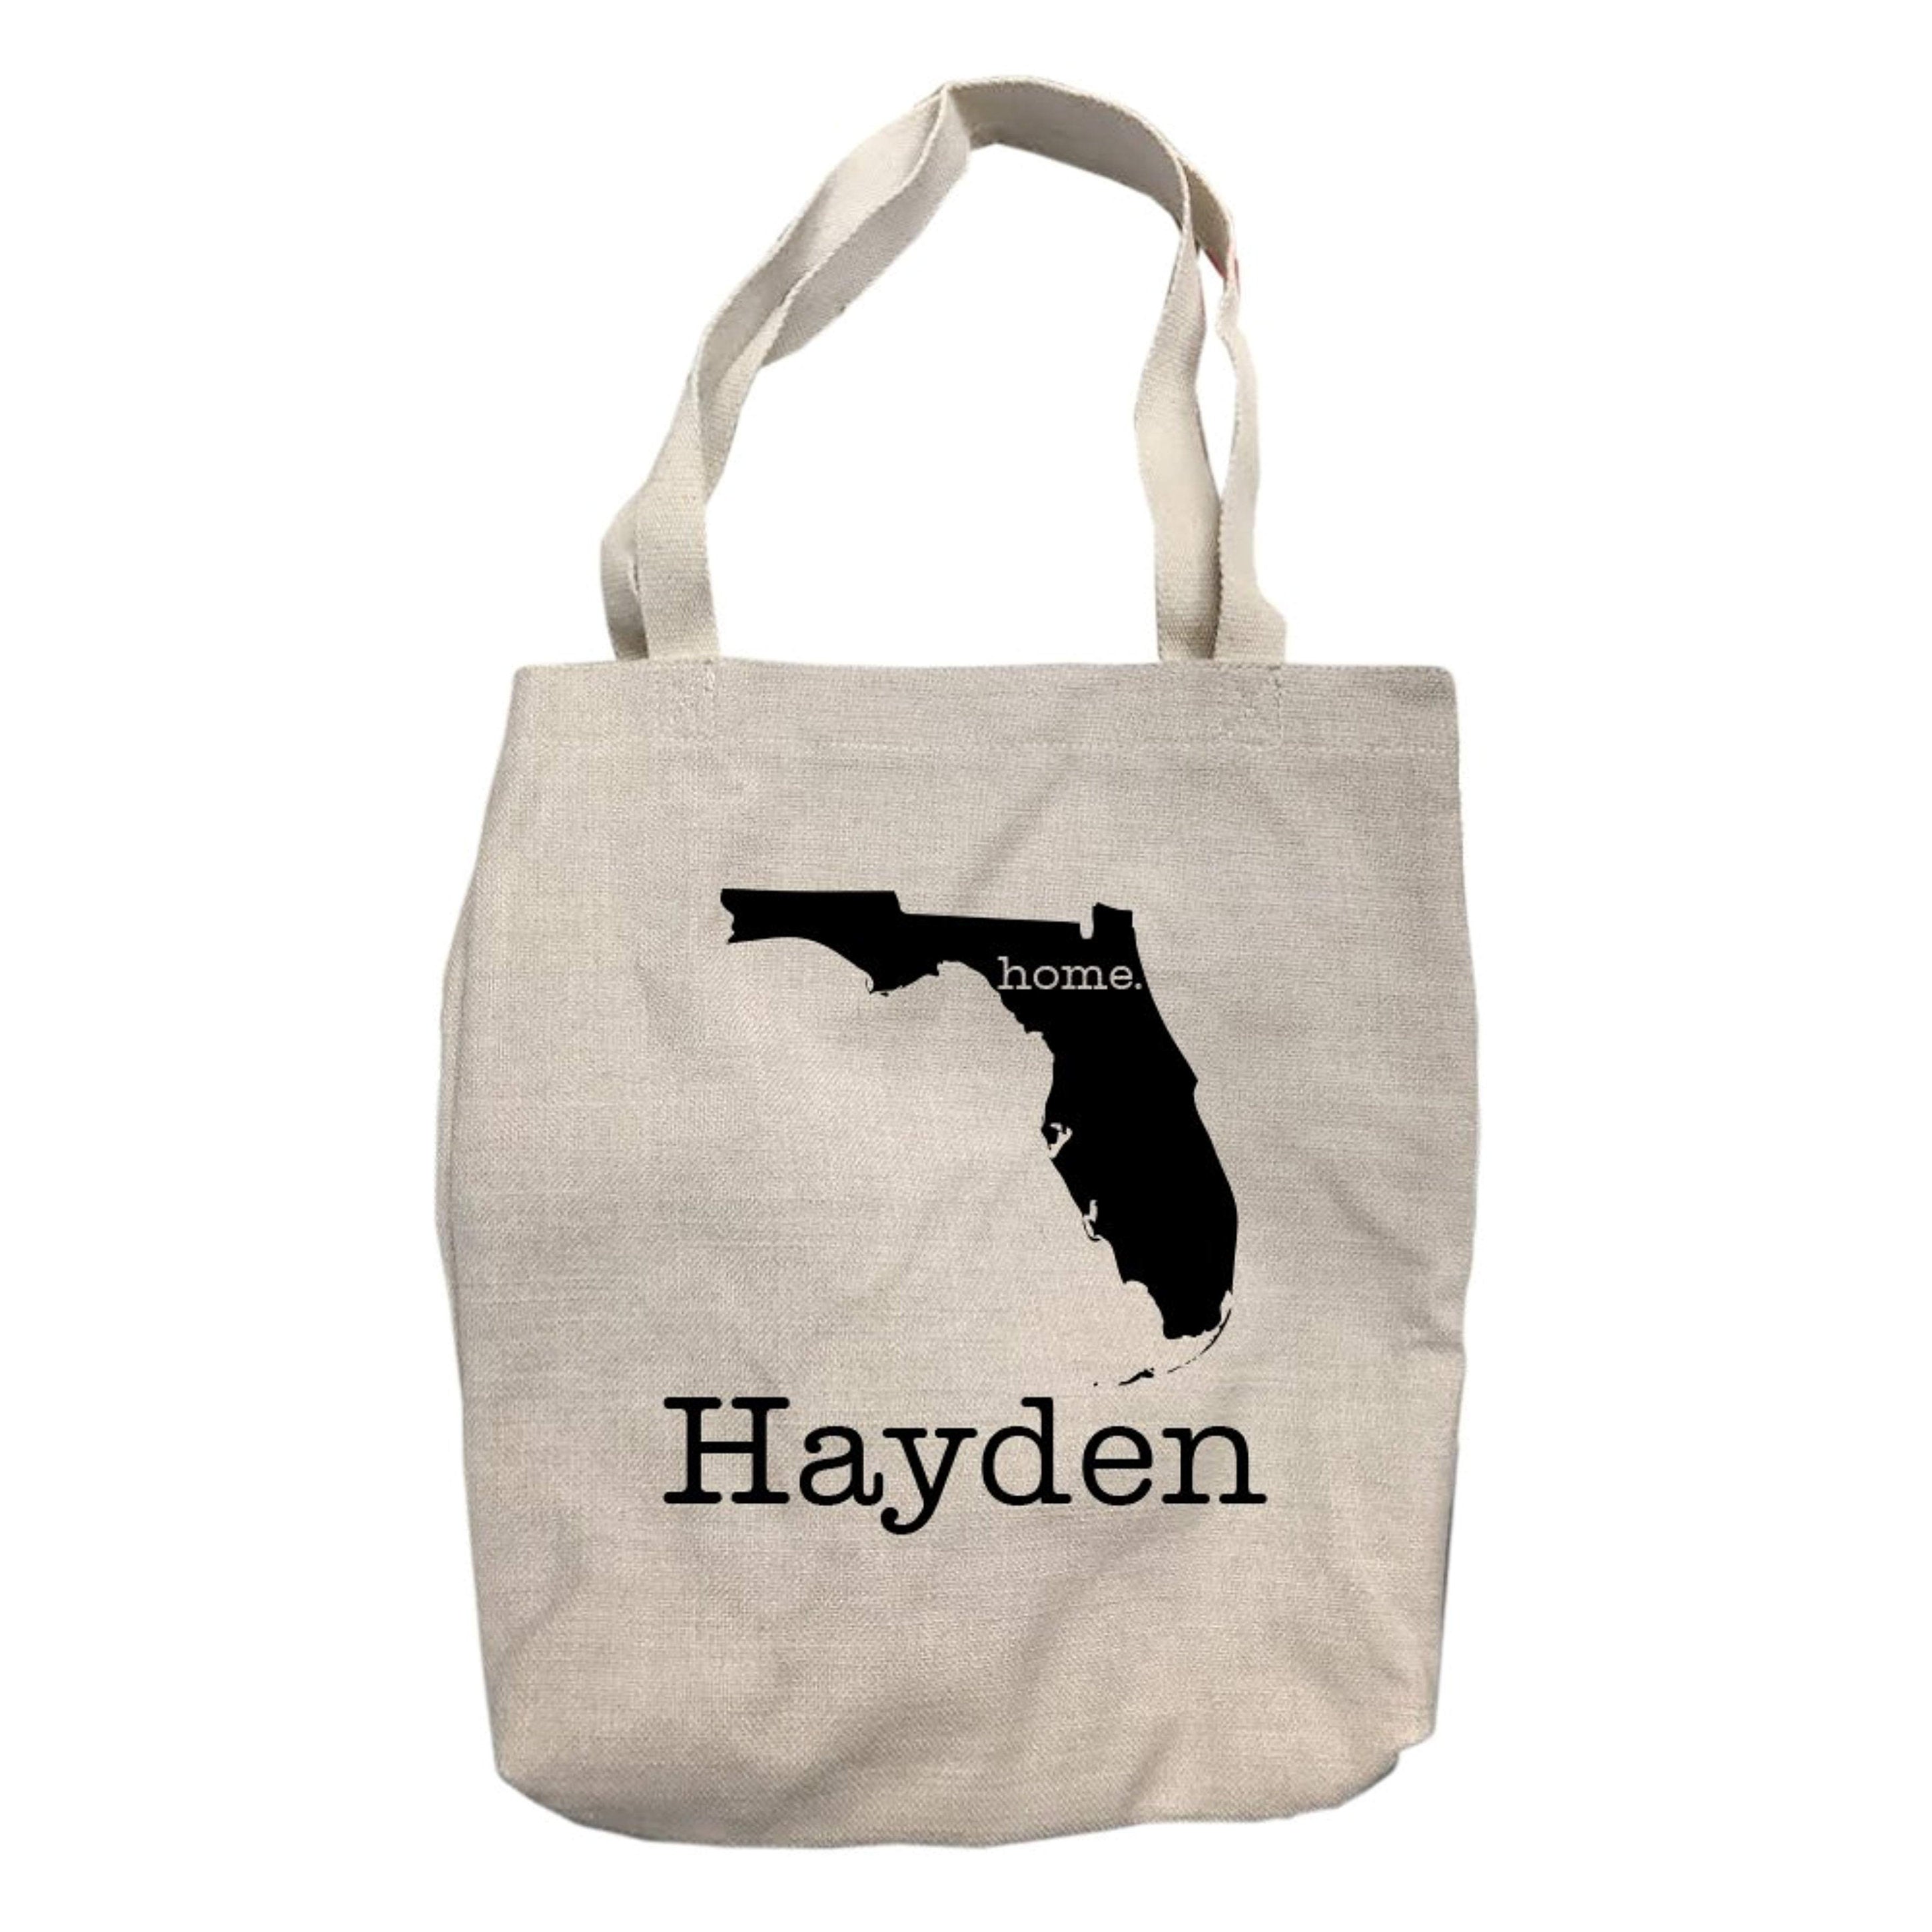 Hayden Tote, Bags